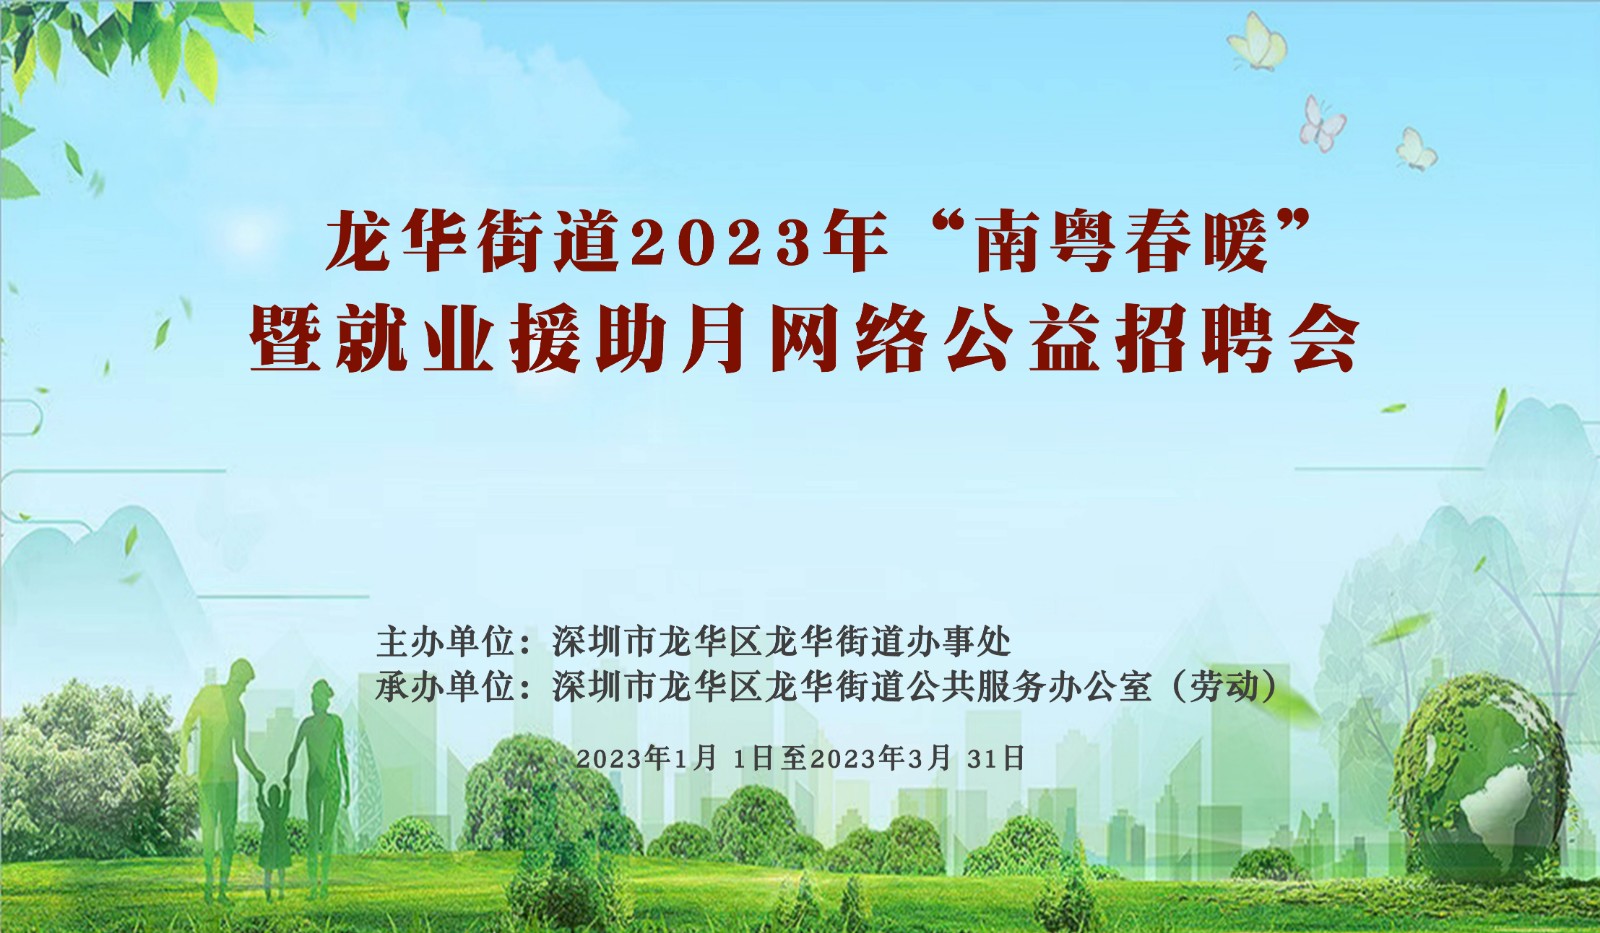 龙华街道2023年“南粤春暖”暨就业援助月网络公益招聘会